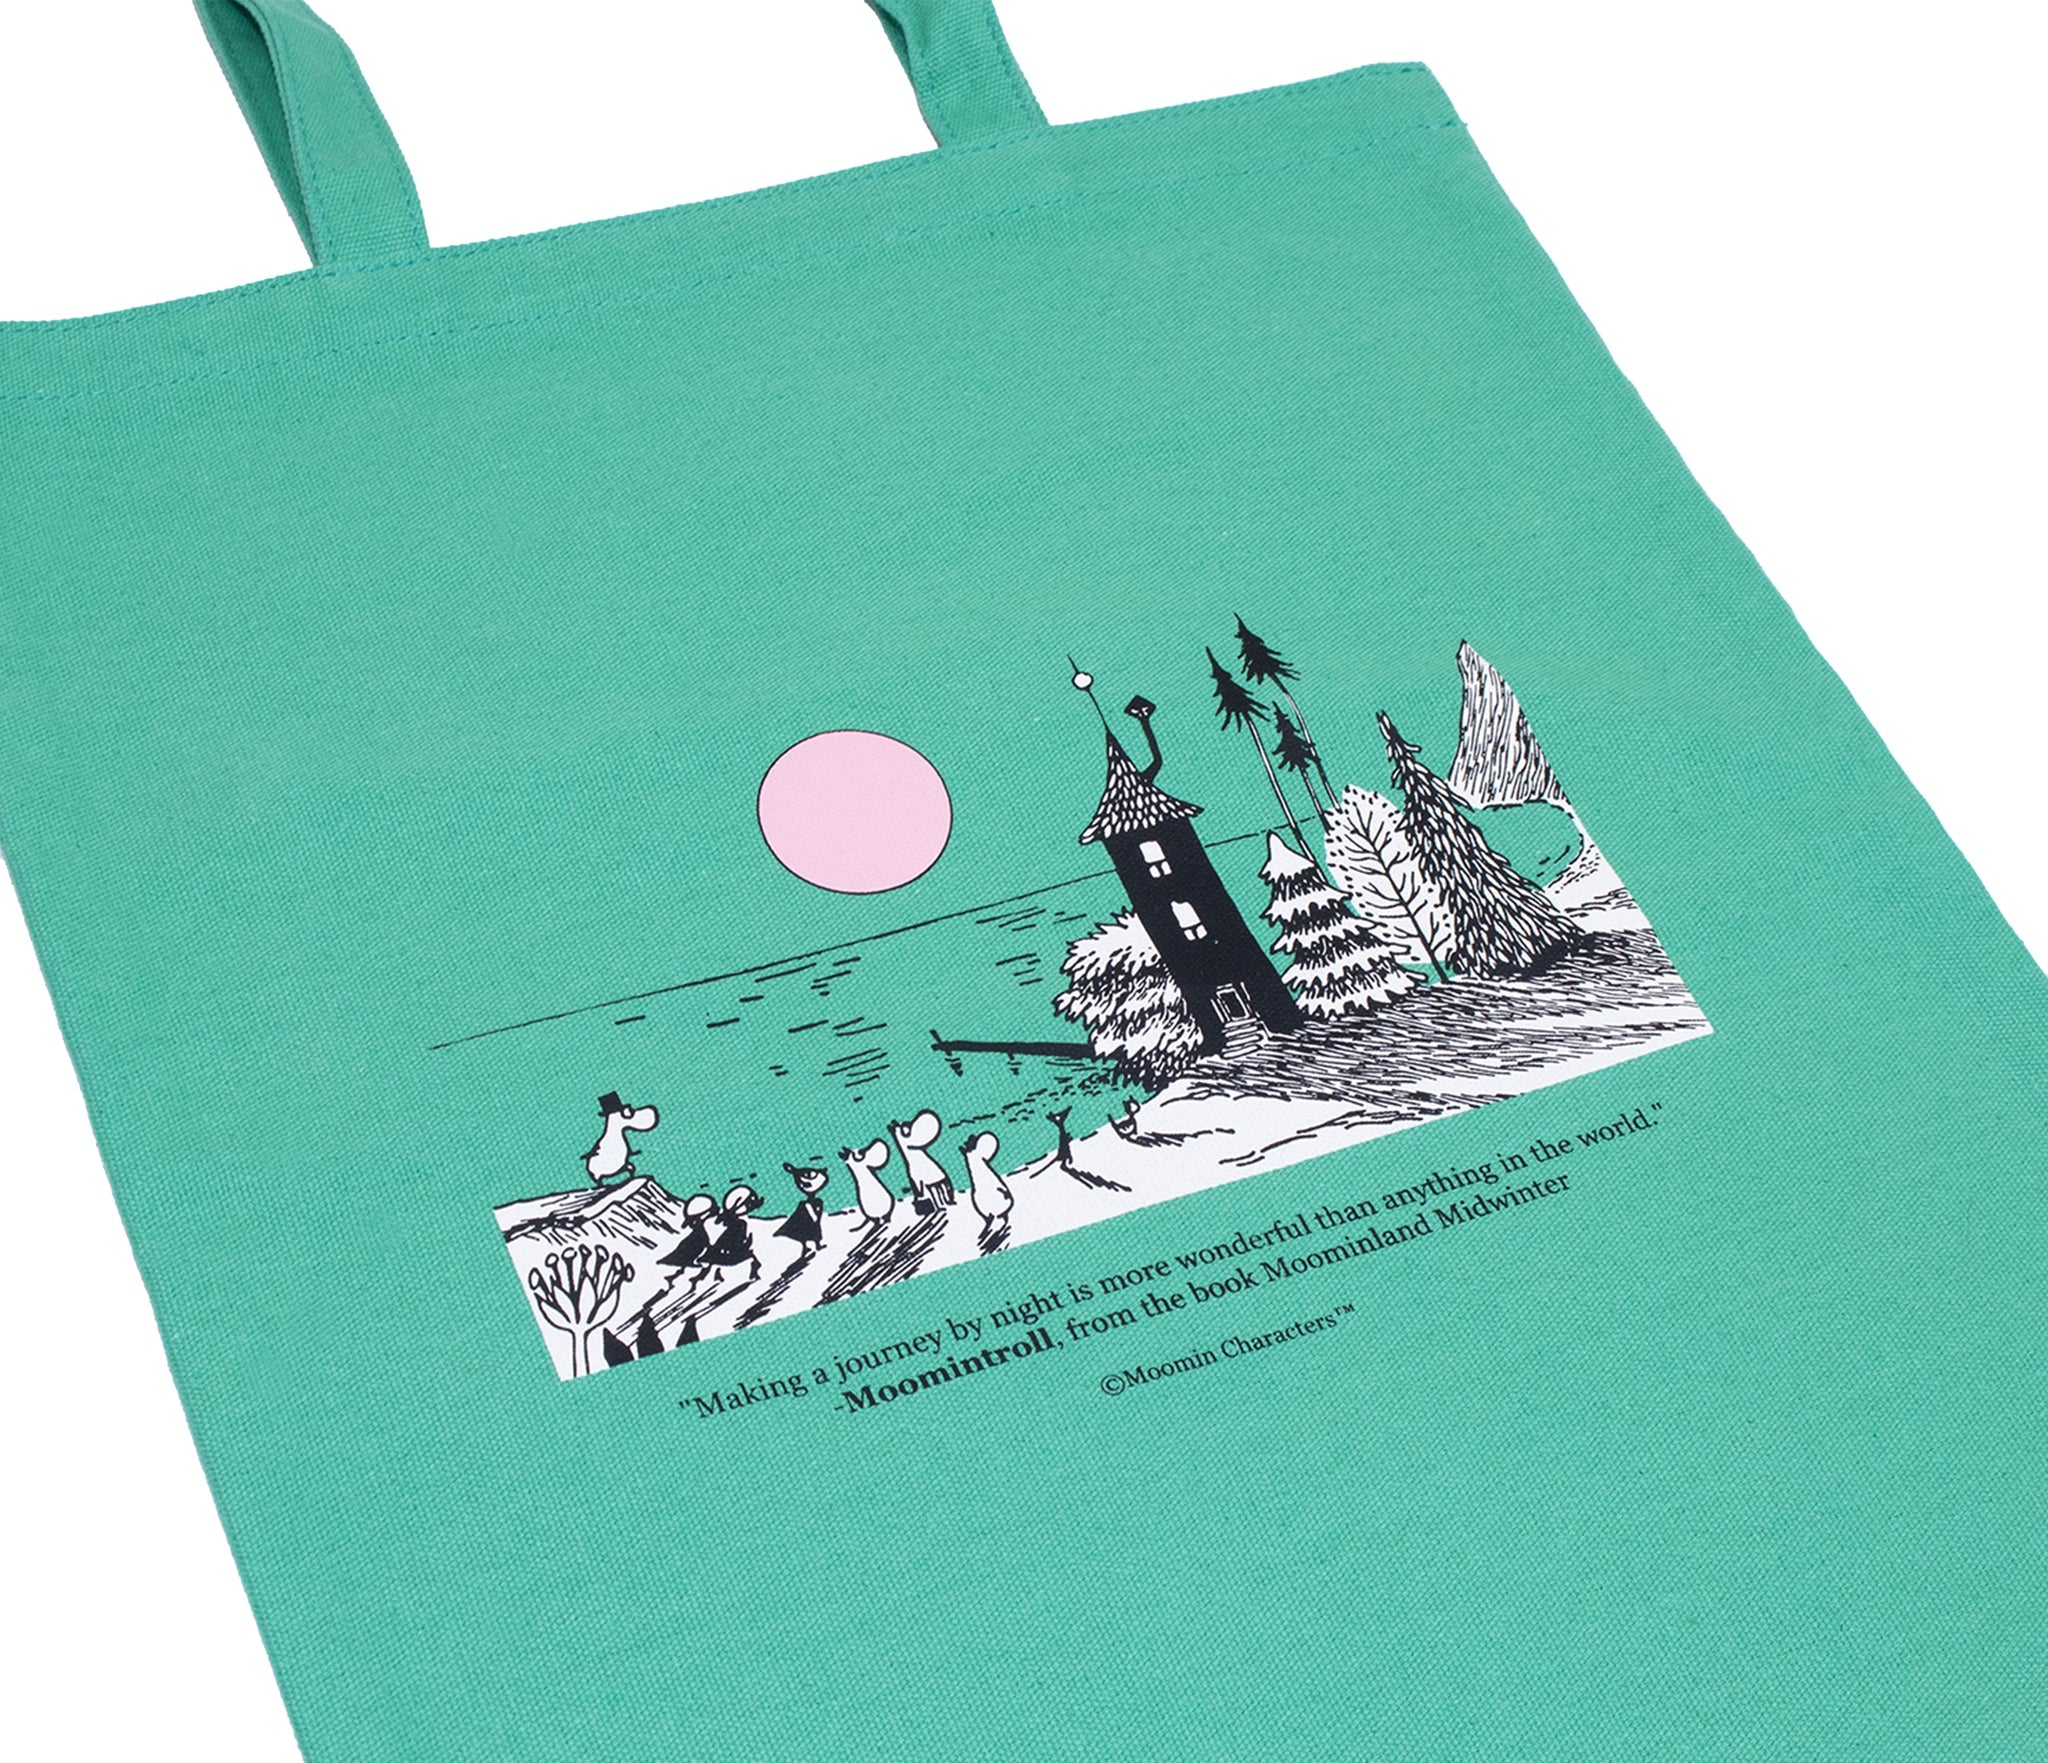 [Moomin] Moominvalley tote bag green